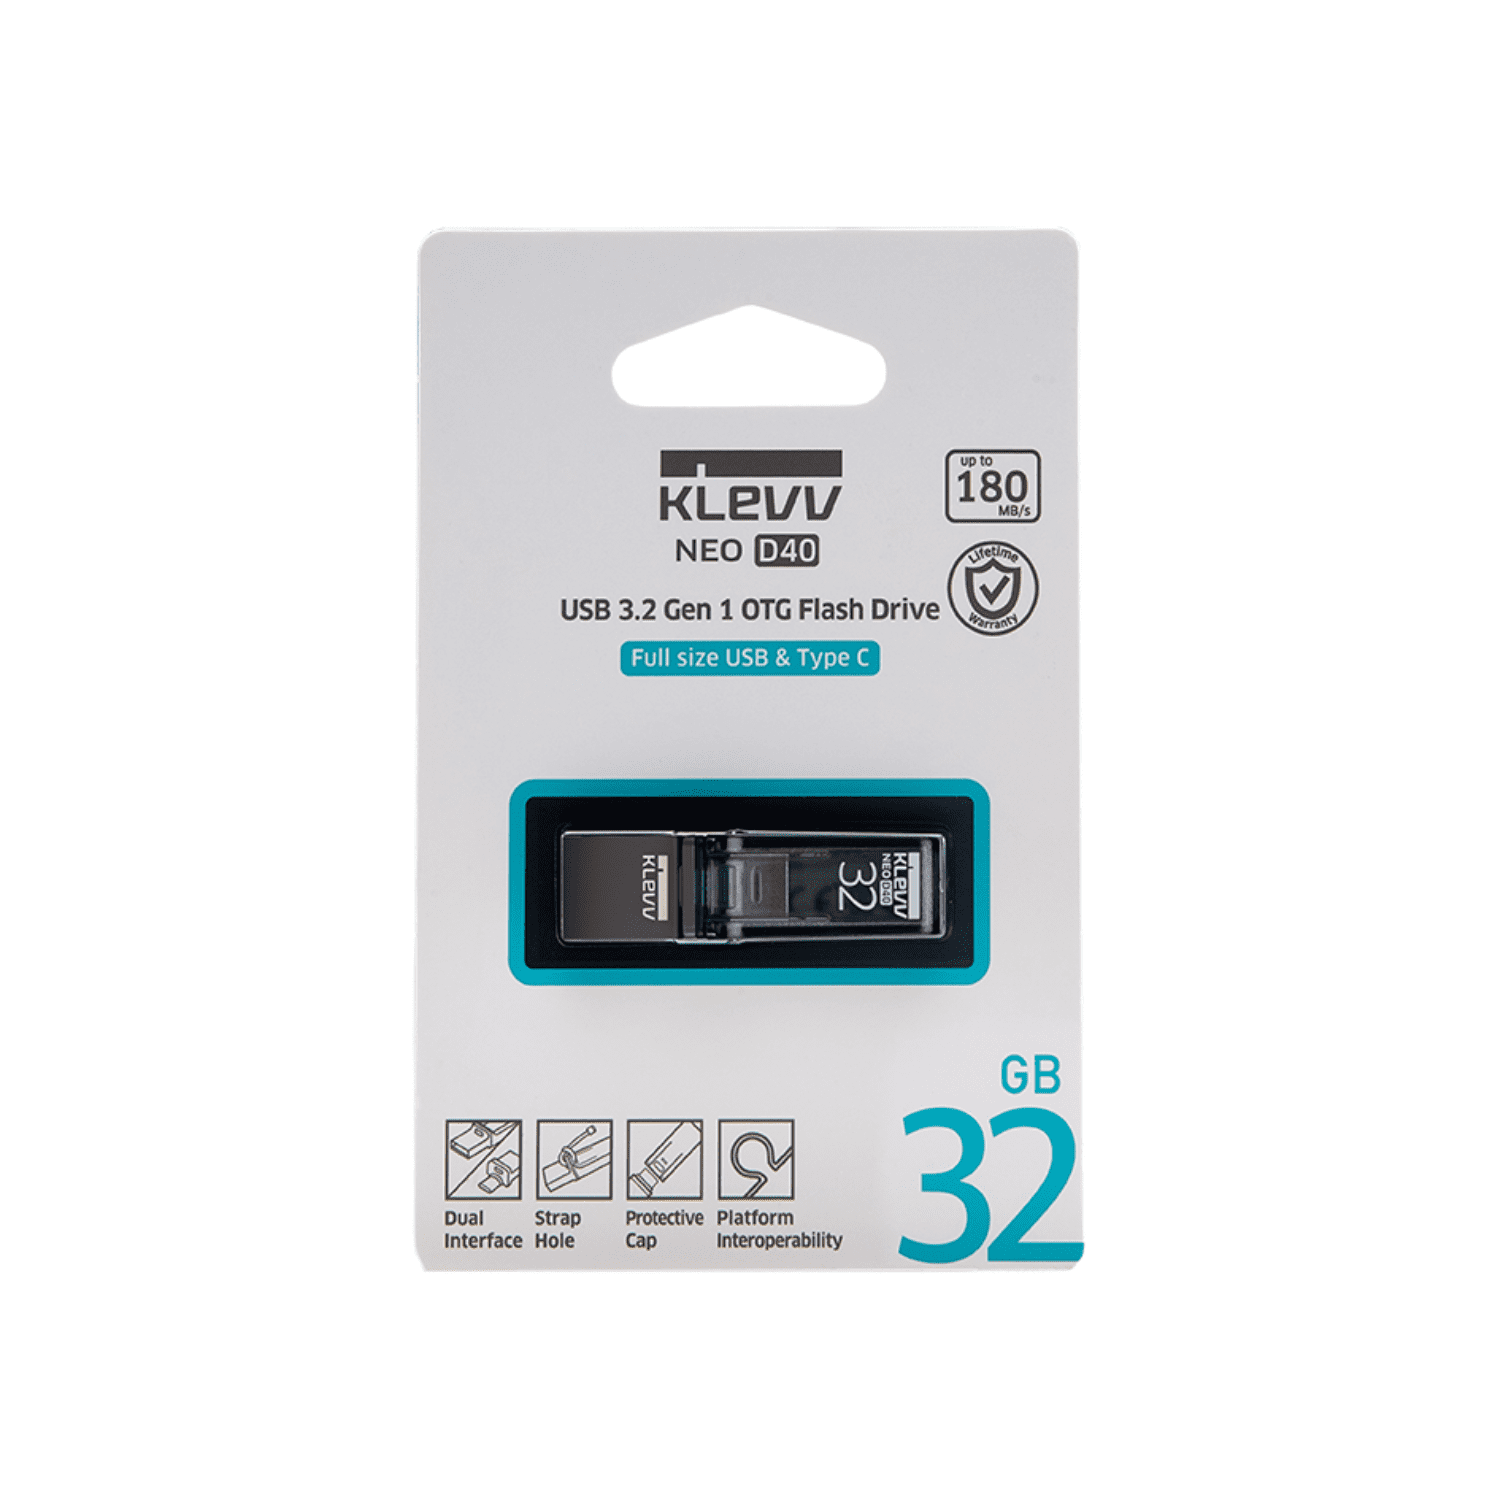 USB KLEVV NEO D40 OTG 32GB